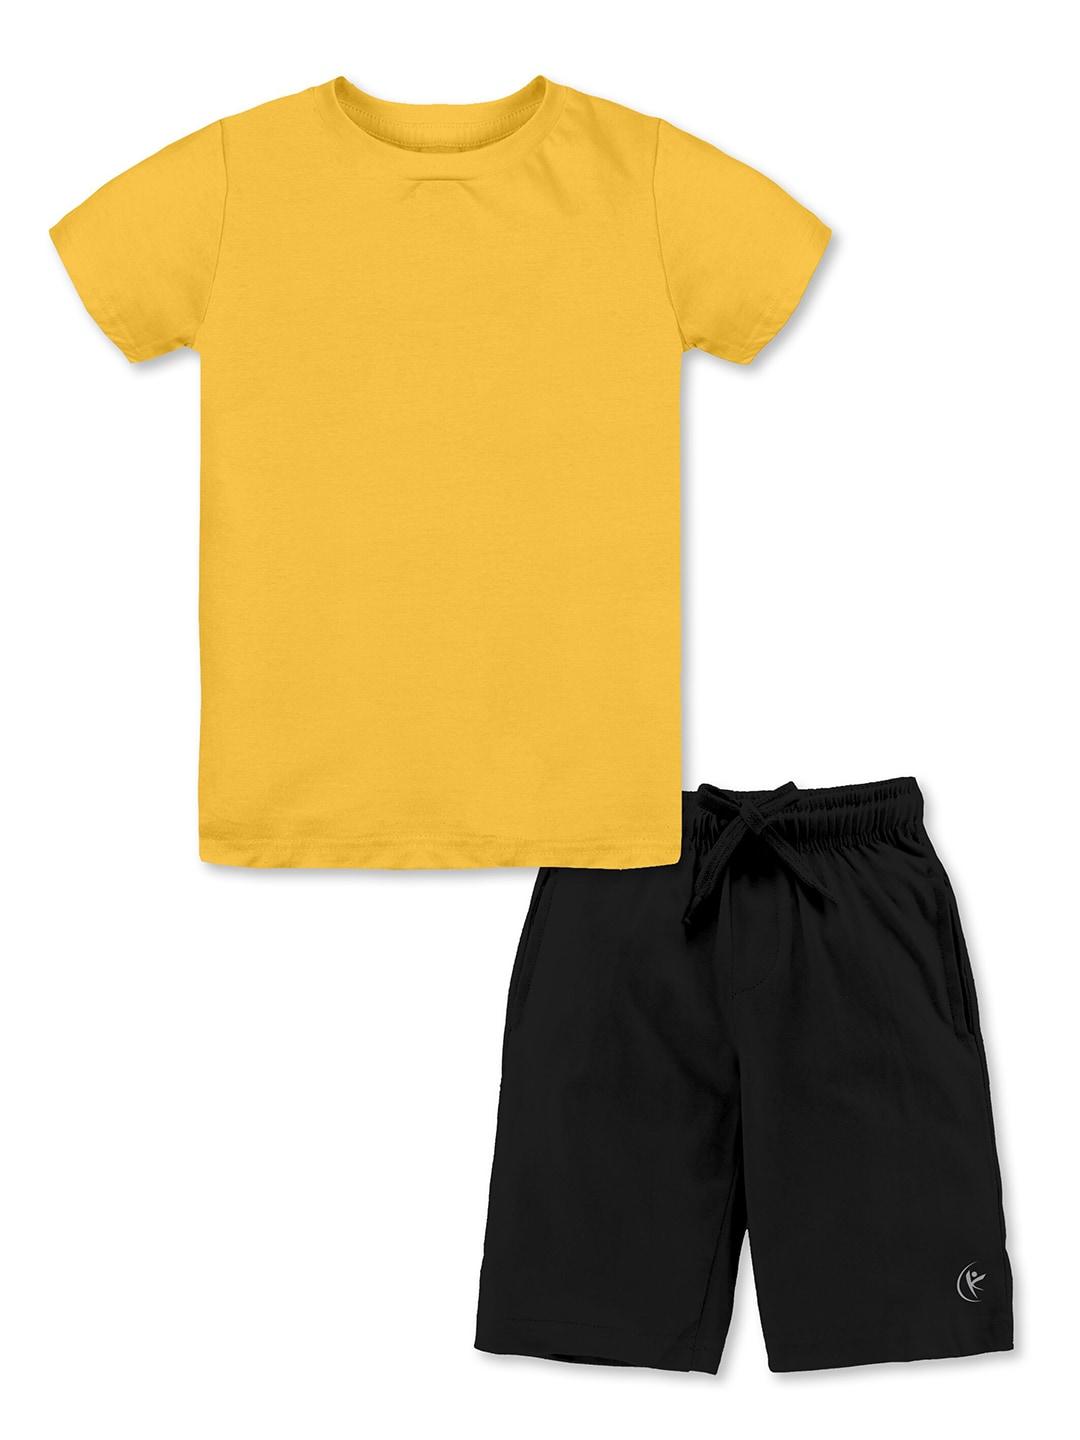 KiddoPanti Boys Pure Cotton T-shirt with Shorts